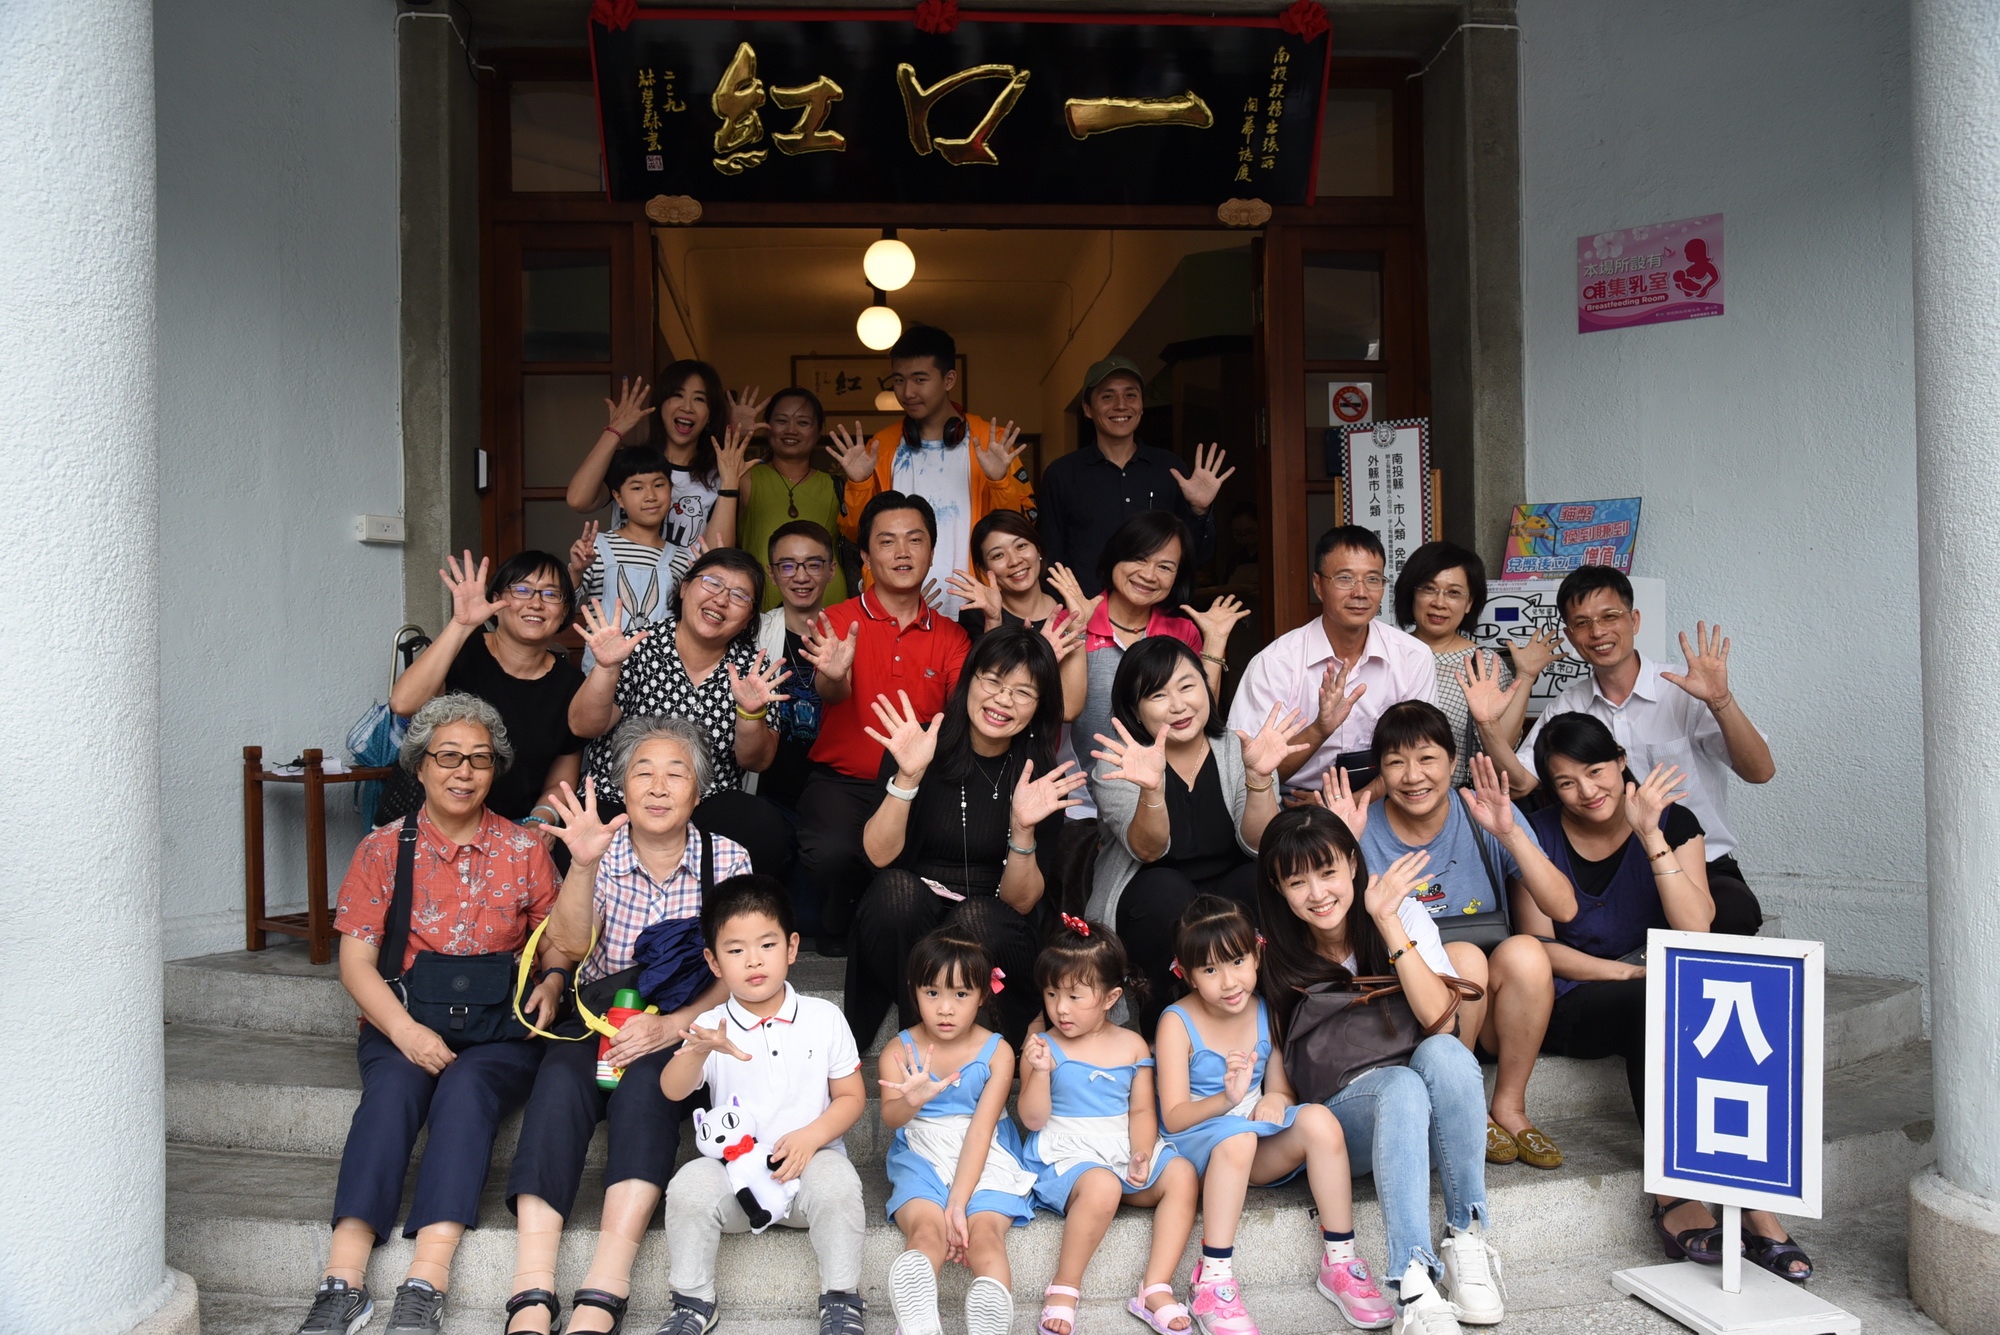 杭州小使者到南投參訪錄製兒童節目 協助推廣觀光